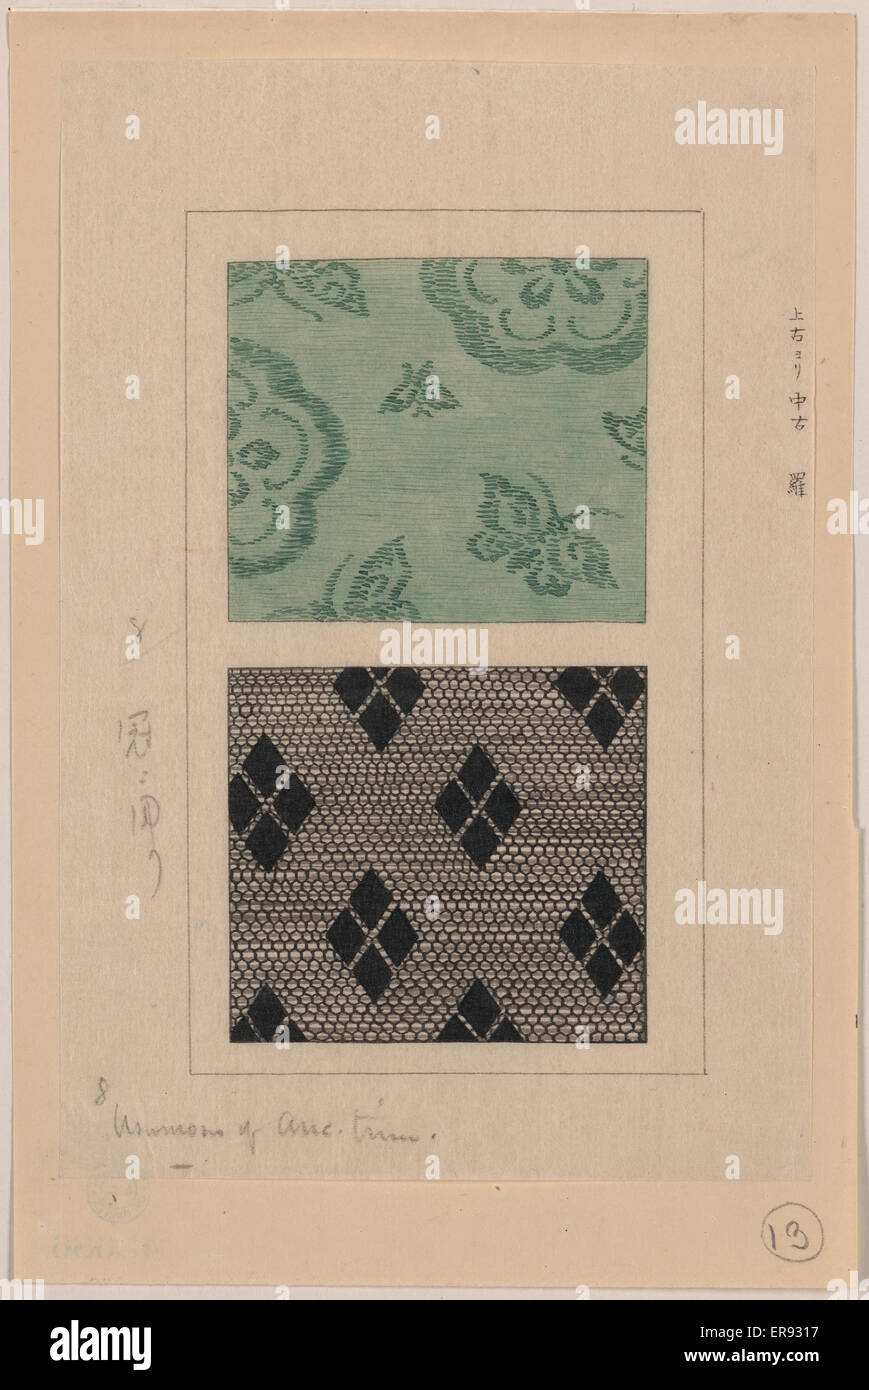 Ra (Usumono) armatura di garza. Disegni di progettazione per kimono su tessuto. Data compresa tra ca. 1750 e 1900. Foto Stock